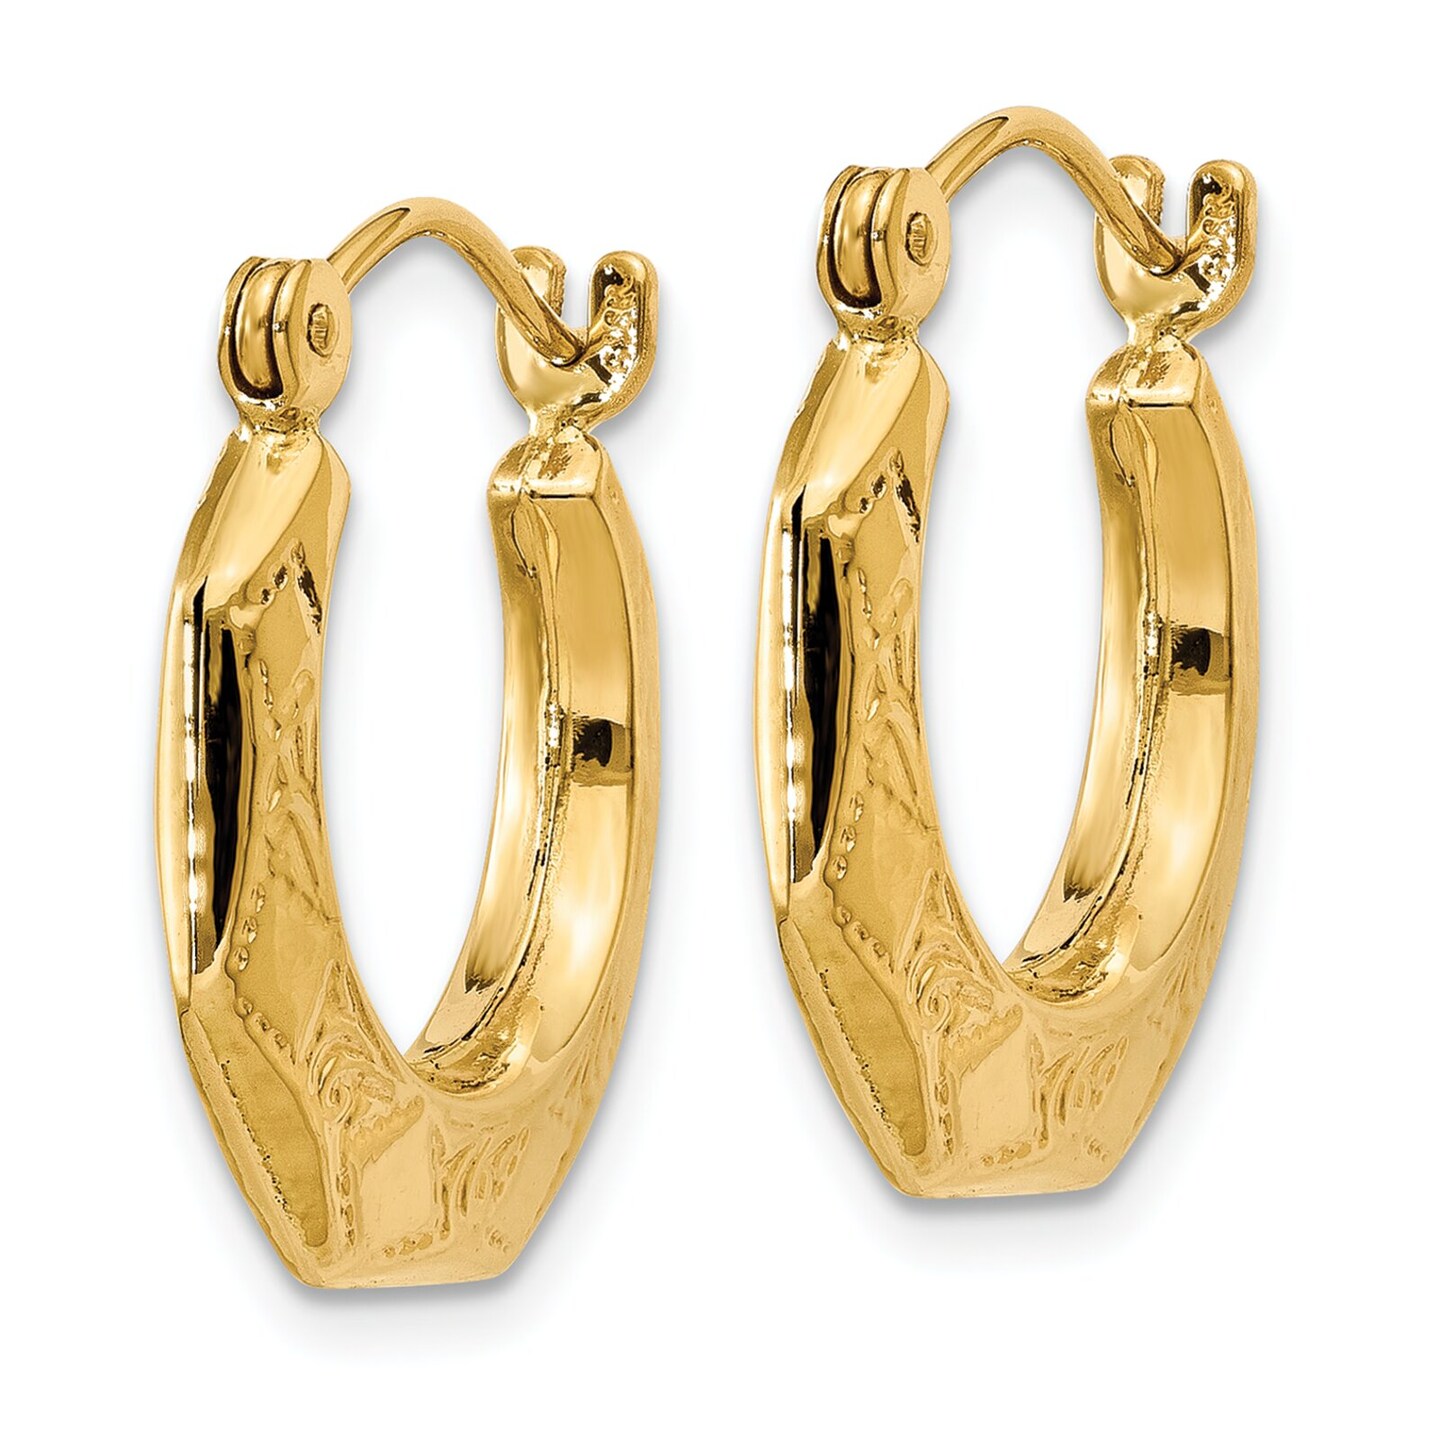 14K Yellow Gold Patterned Hoop Earrings Jewelry 18mm x 17mm